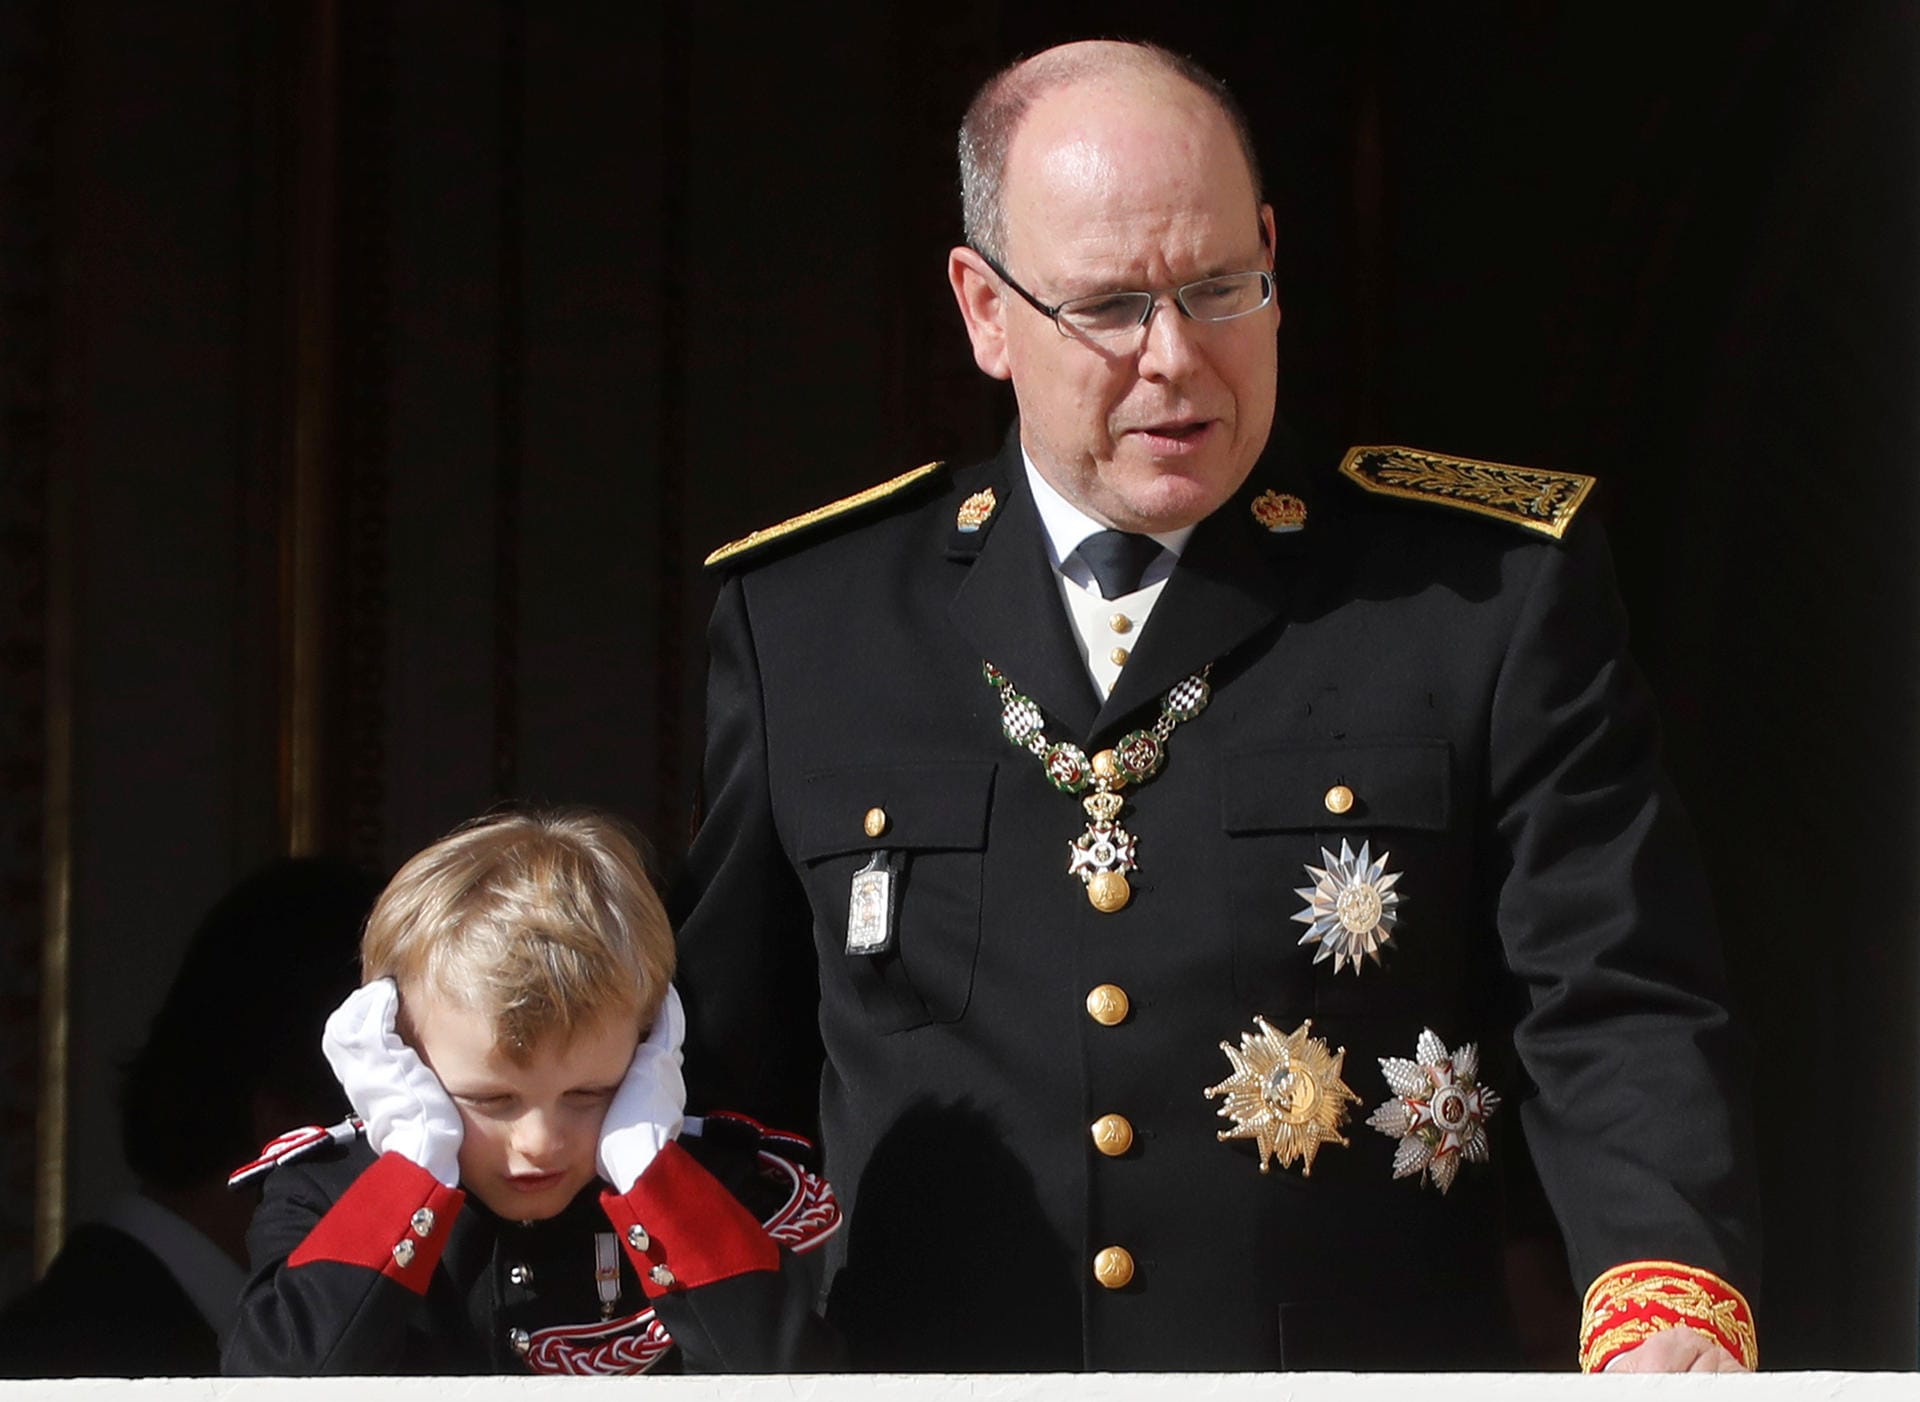 Wie sein Vater Albert trägt auch der kleine Prinz Jacques eine Uniform.